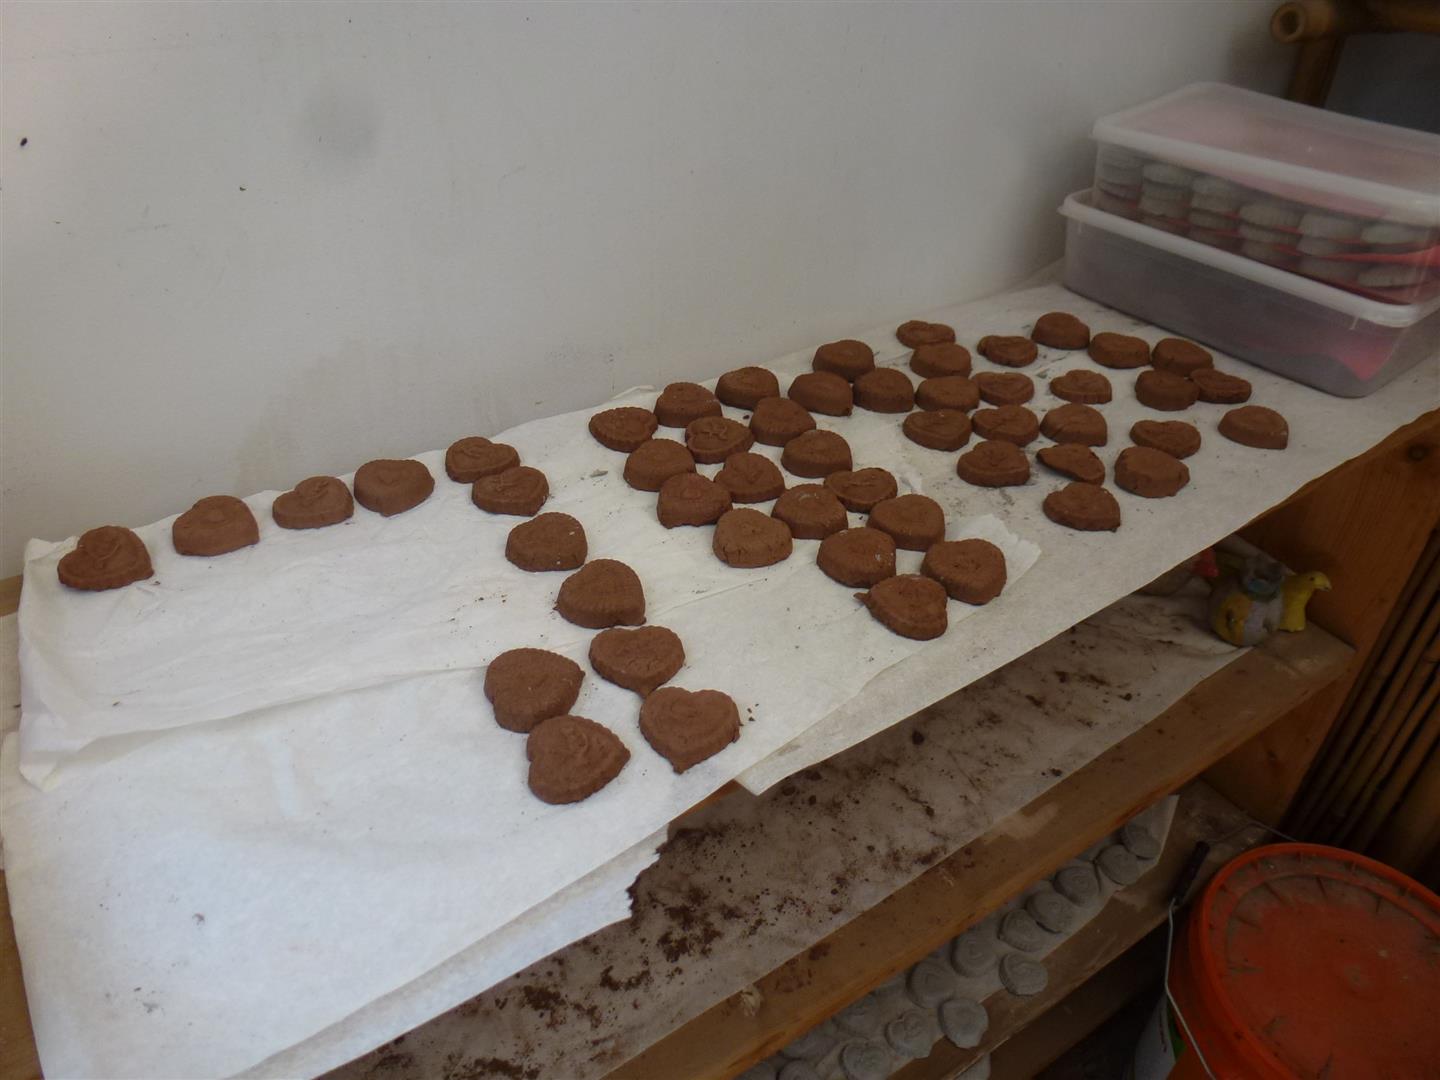 מוצר -עוגינה- המיוצר במקום ומיועד למכירה כסיוע לגידול צמחים וסיוע לקהילה